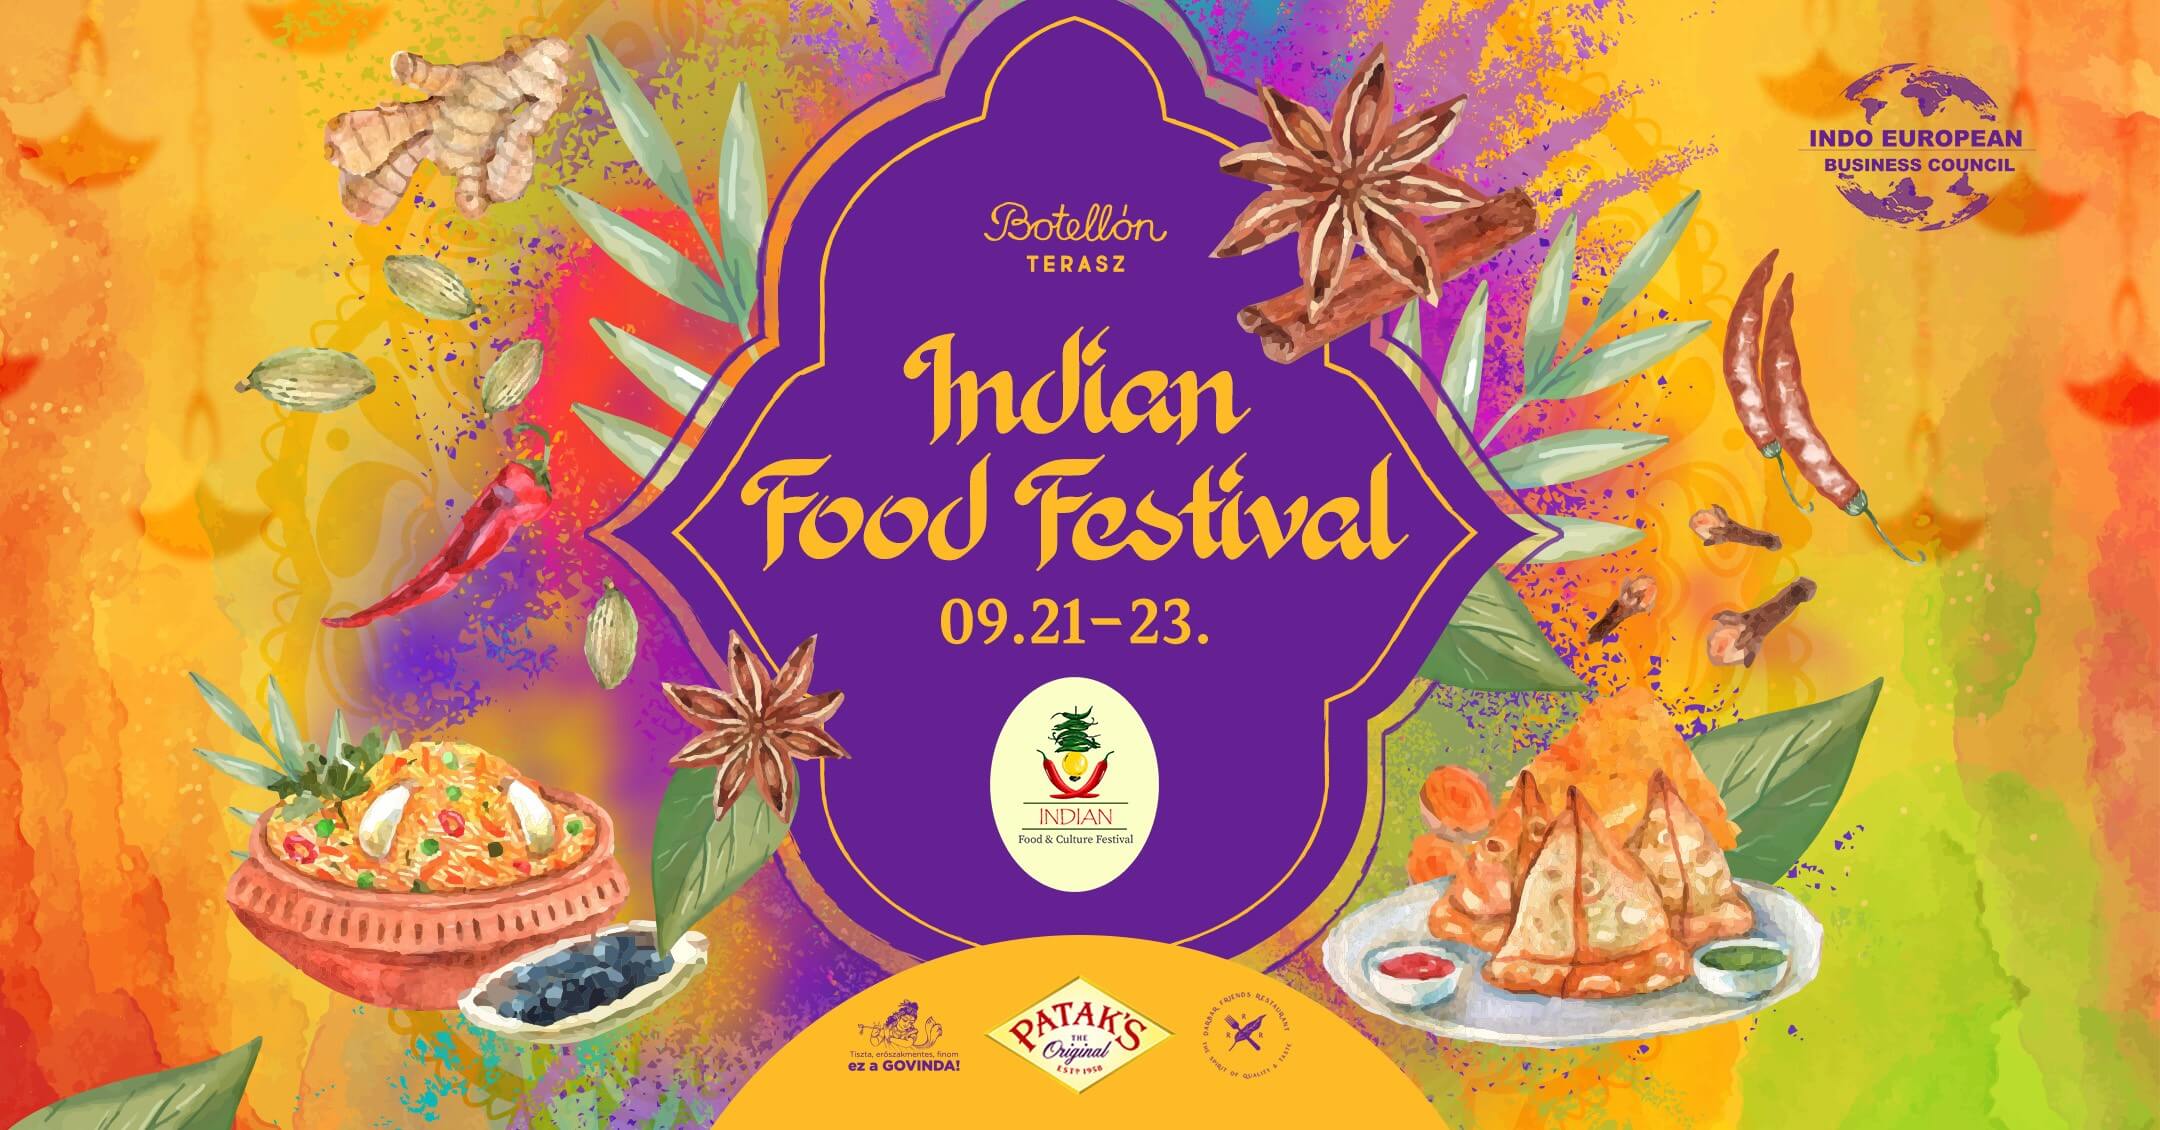 Indian Food Festival, Botellón Terrace, 21 - 23 September